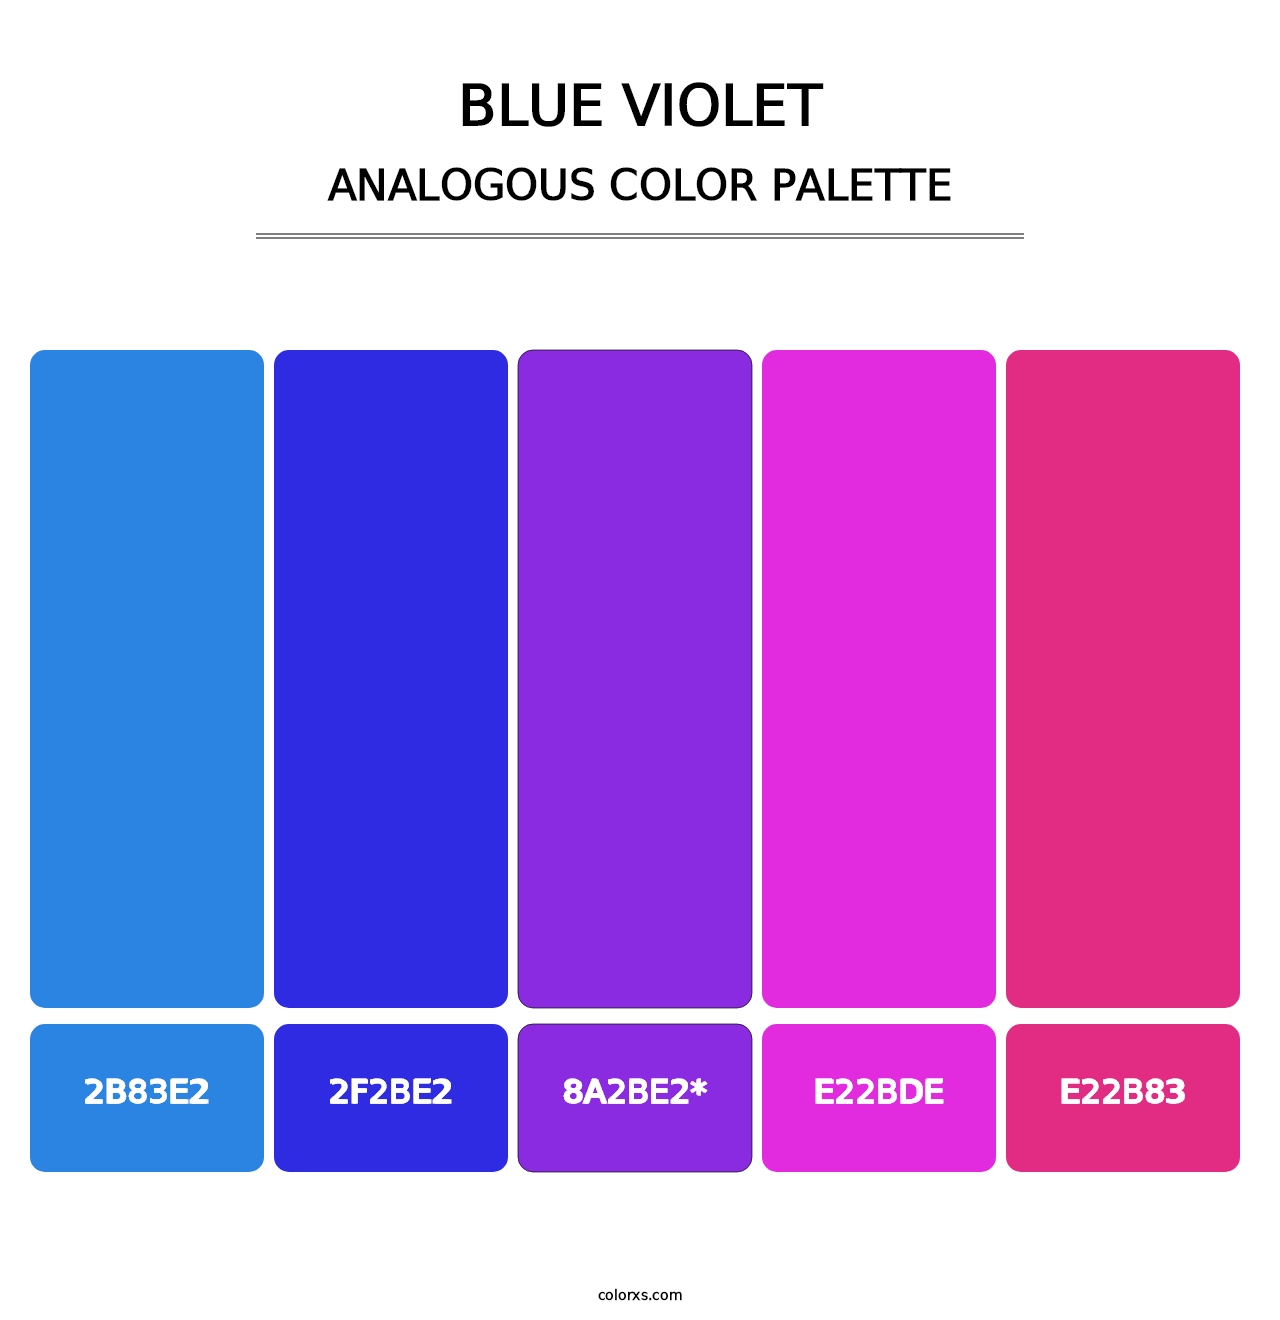 Blue Violet - Analogous Color Palette